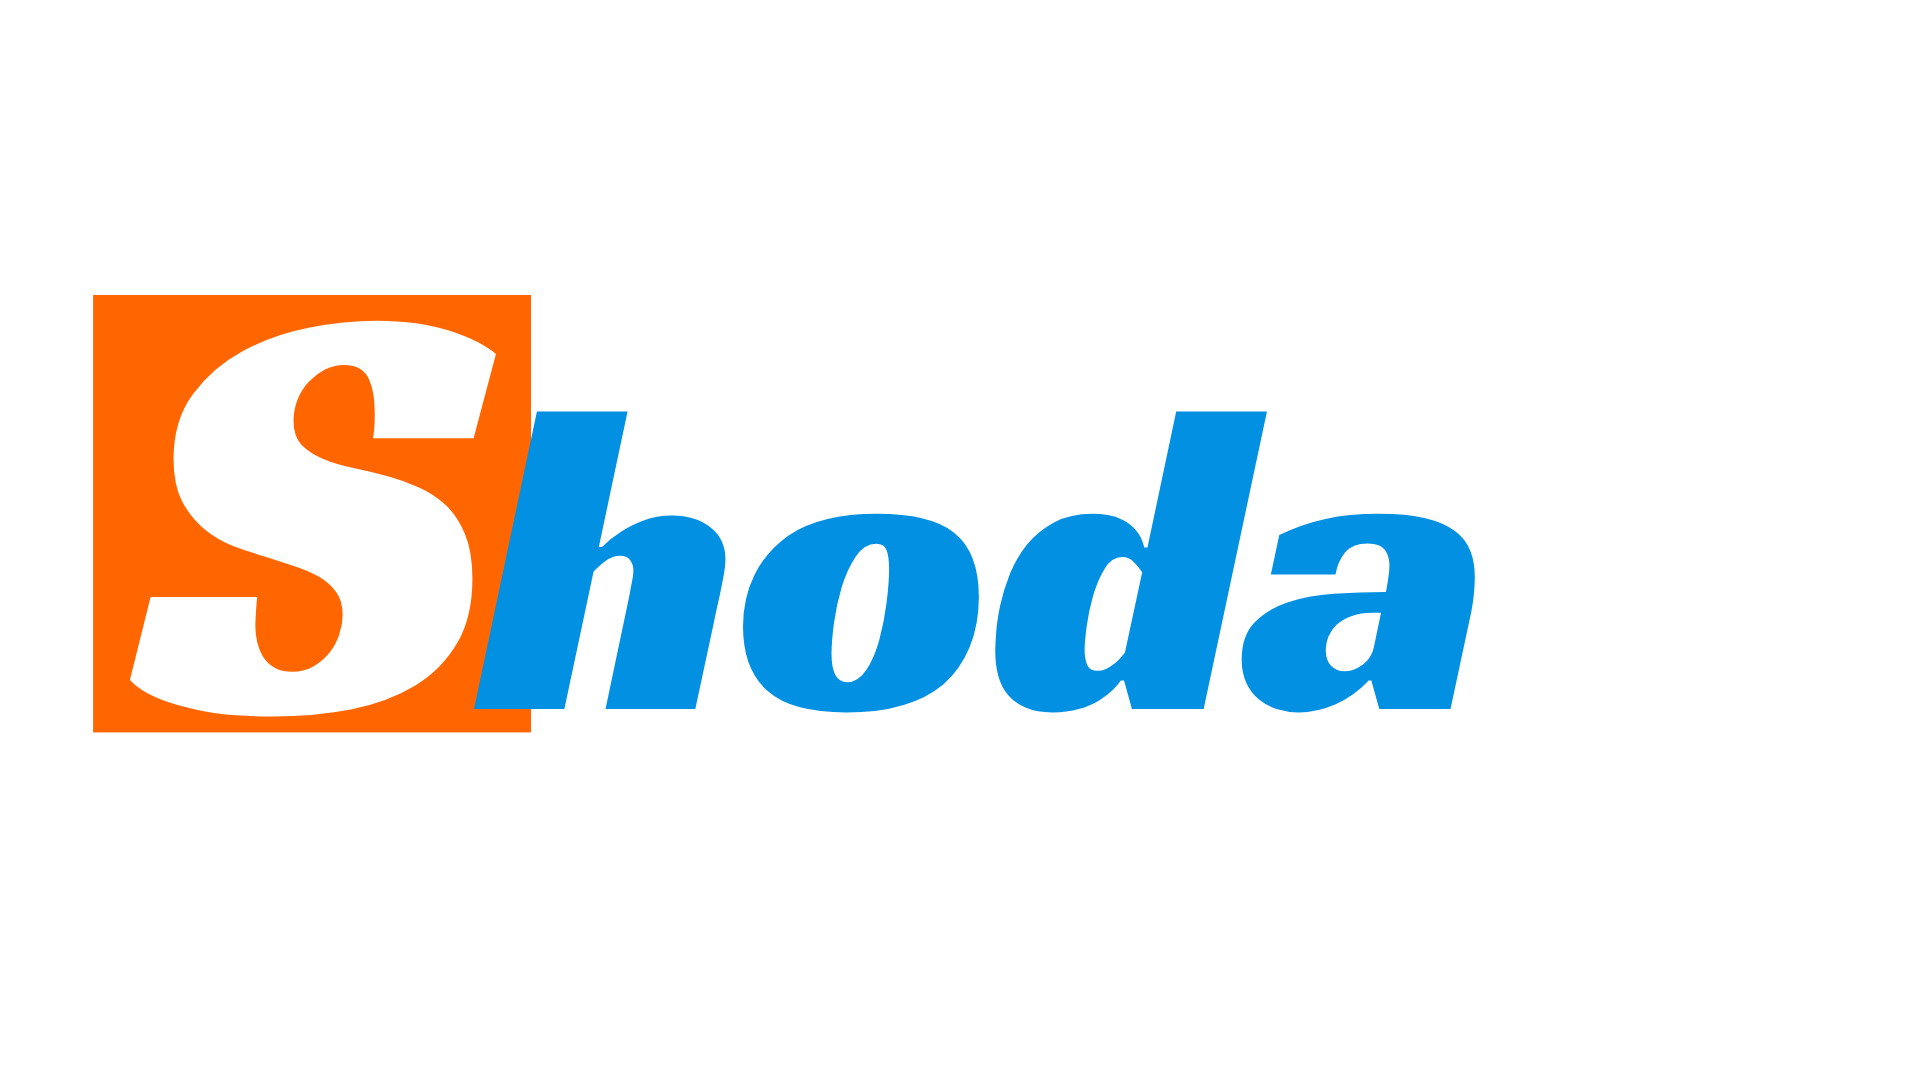 De beste deals– Shoda